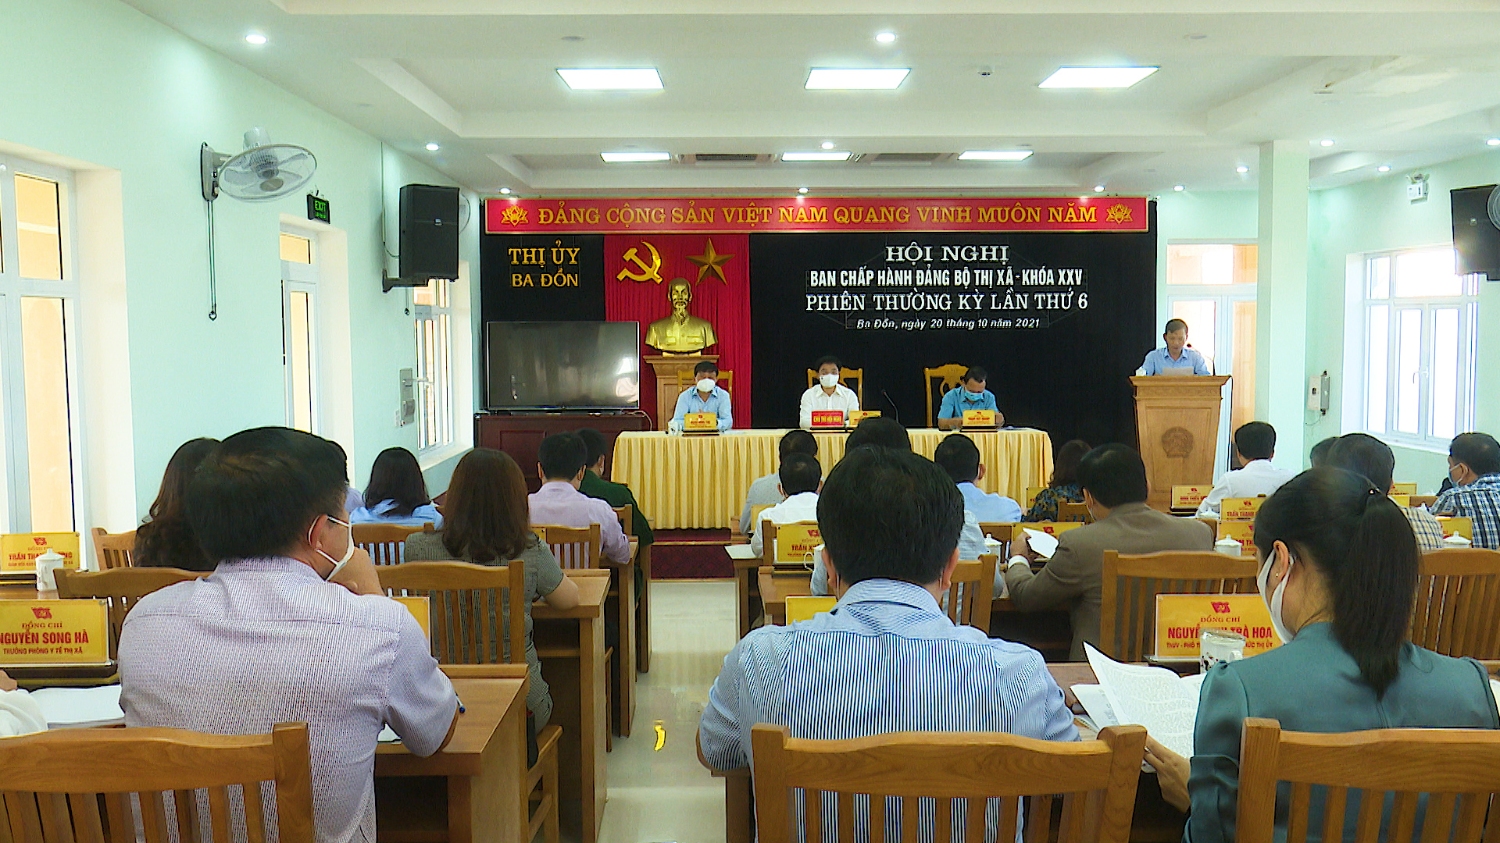 Toàn cảnh Hội nghị BCH Đảng bộ thị xã Ba Đồn khóa XXV, phiên họp thường kỳ lần thứ 6